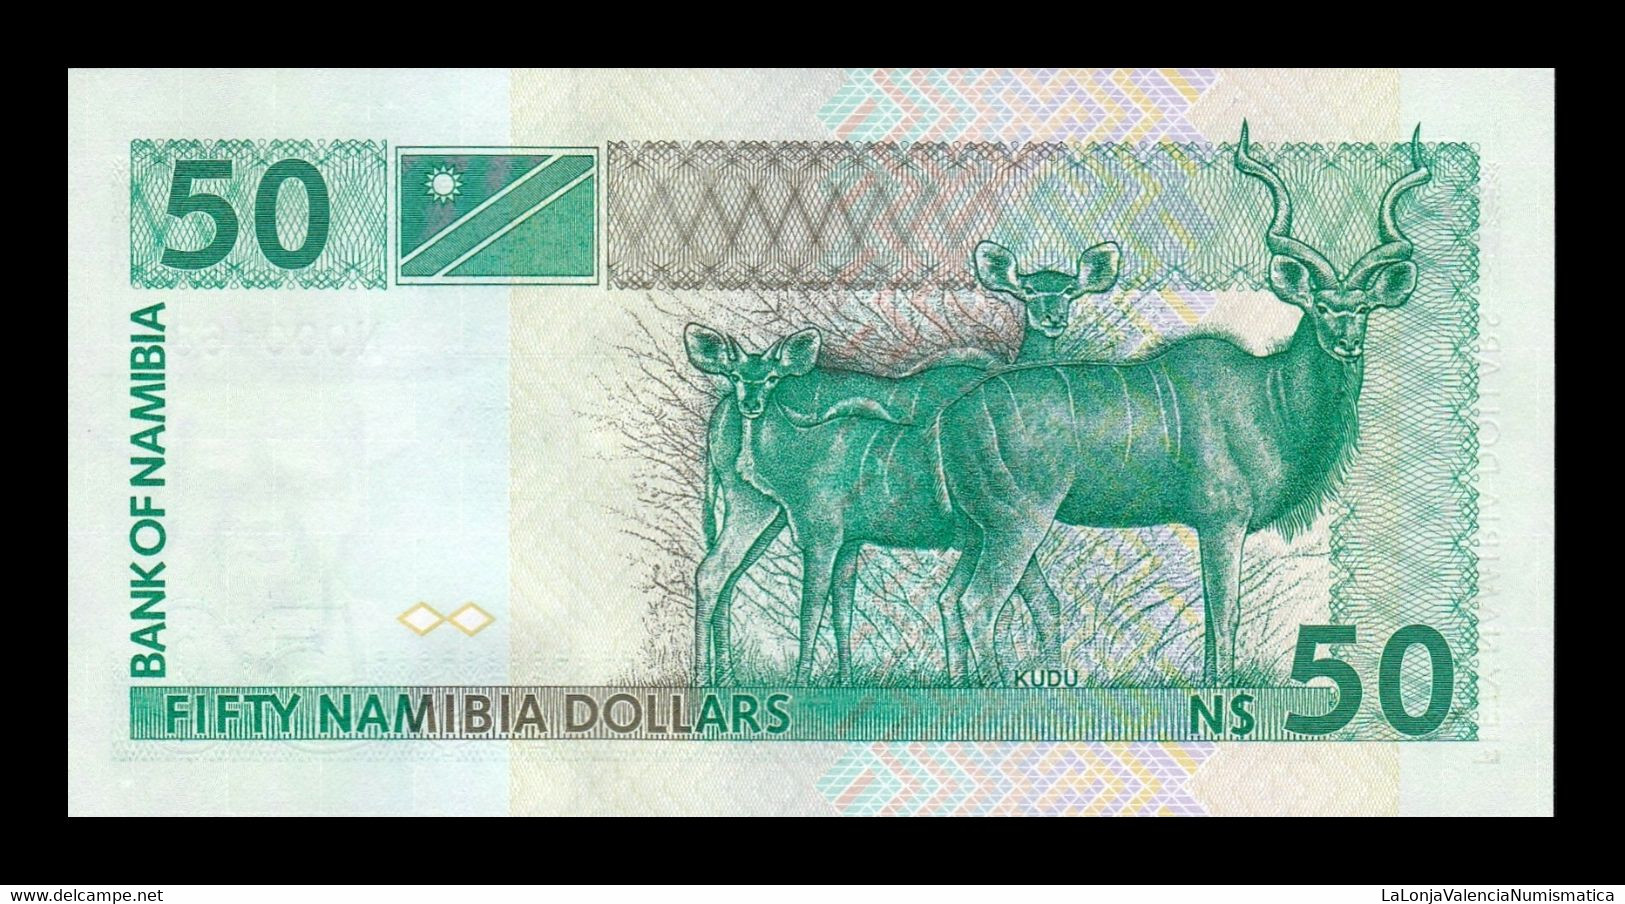 Namibia 50 Dollars 1993 Pick 2 Low Serial T.685 SC UNC - Namibie